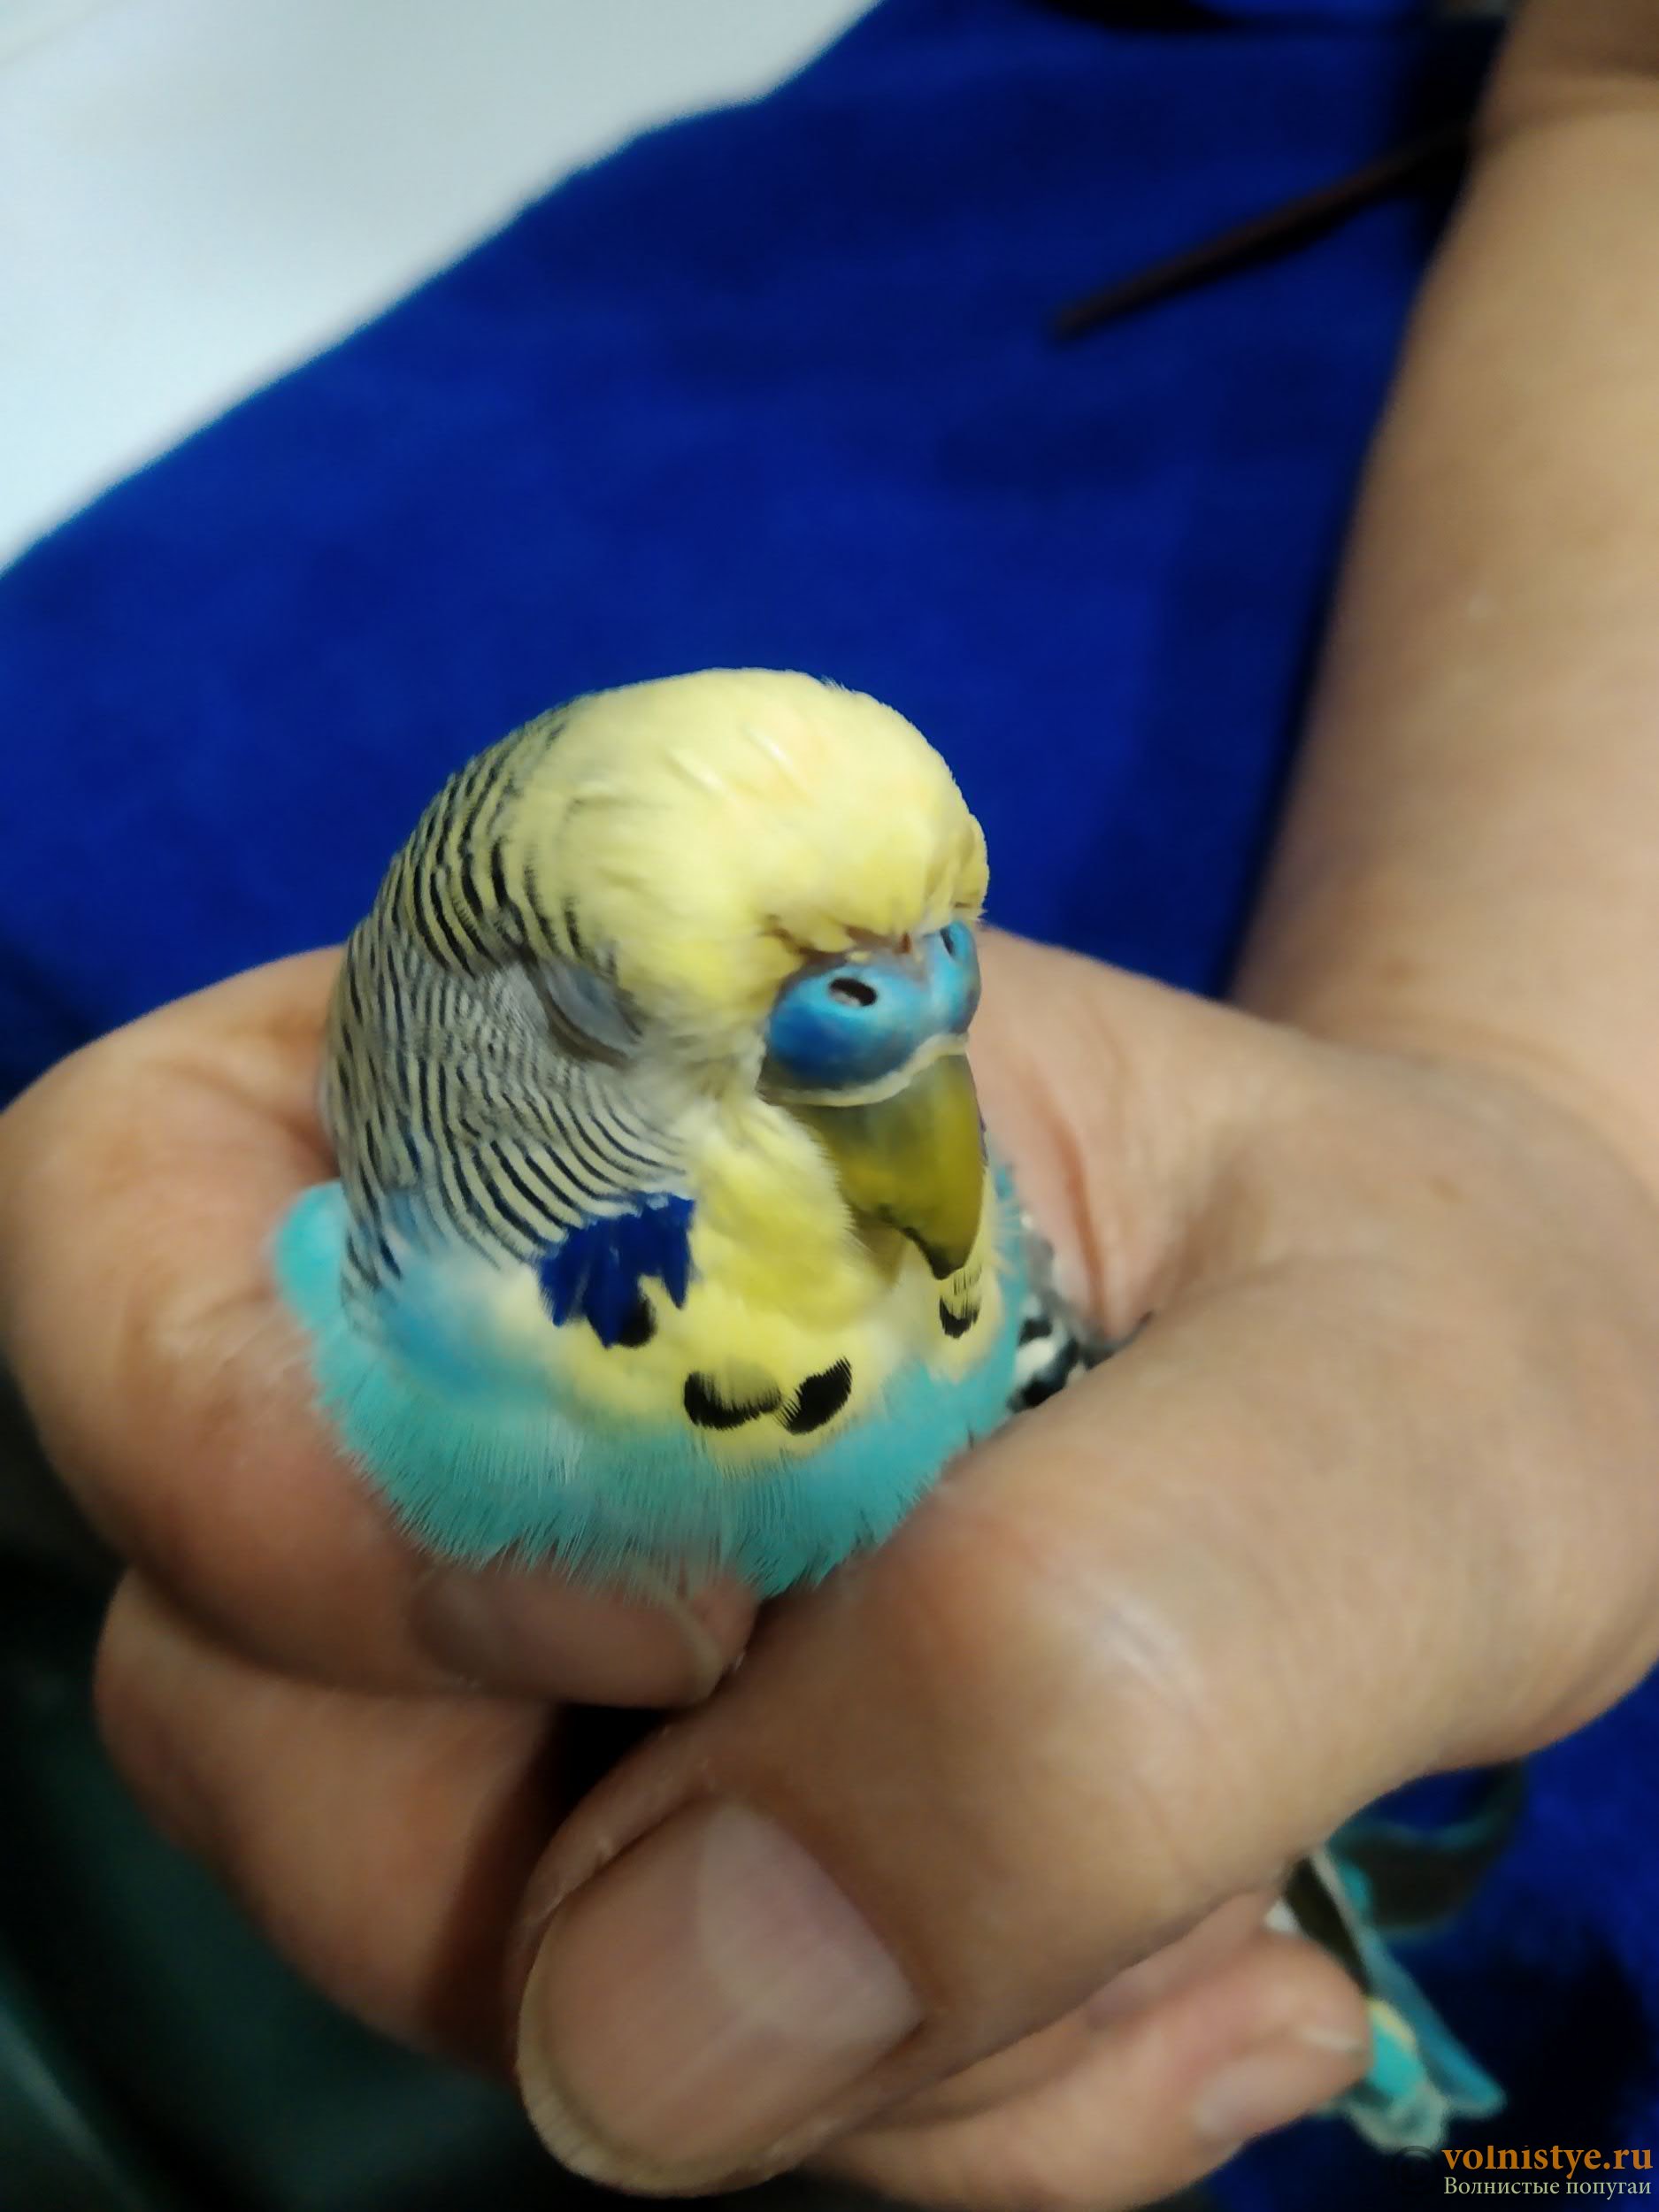 Нарост на клюве у волнистого попугая: причины и лечение